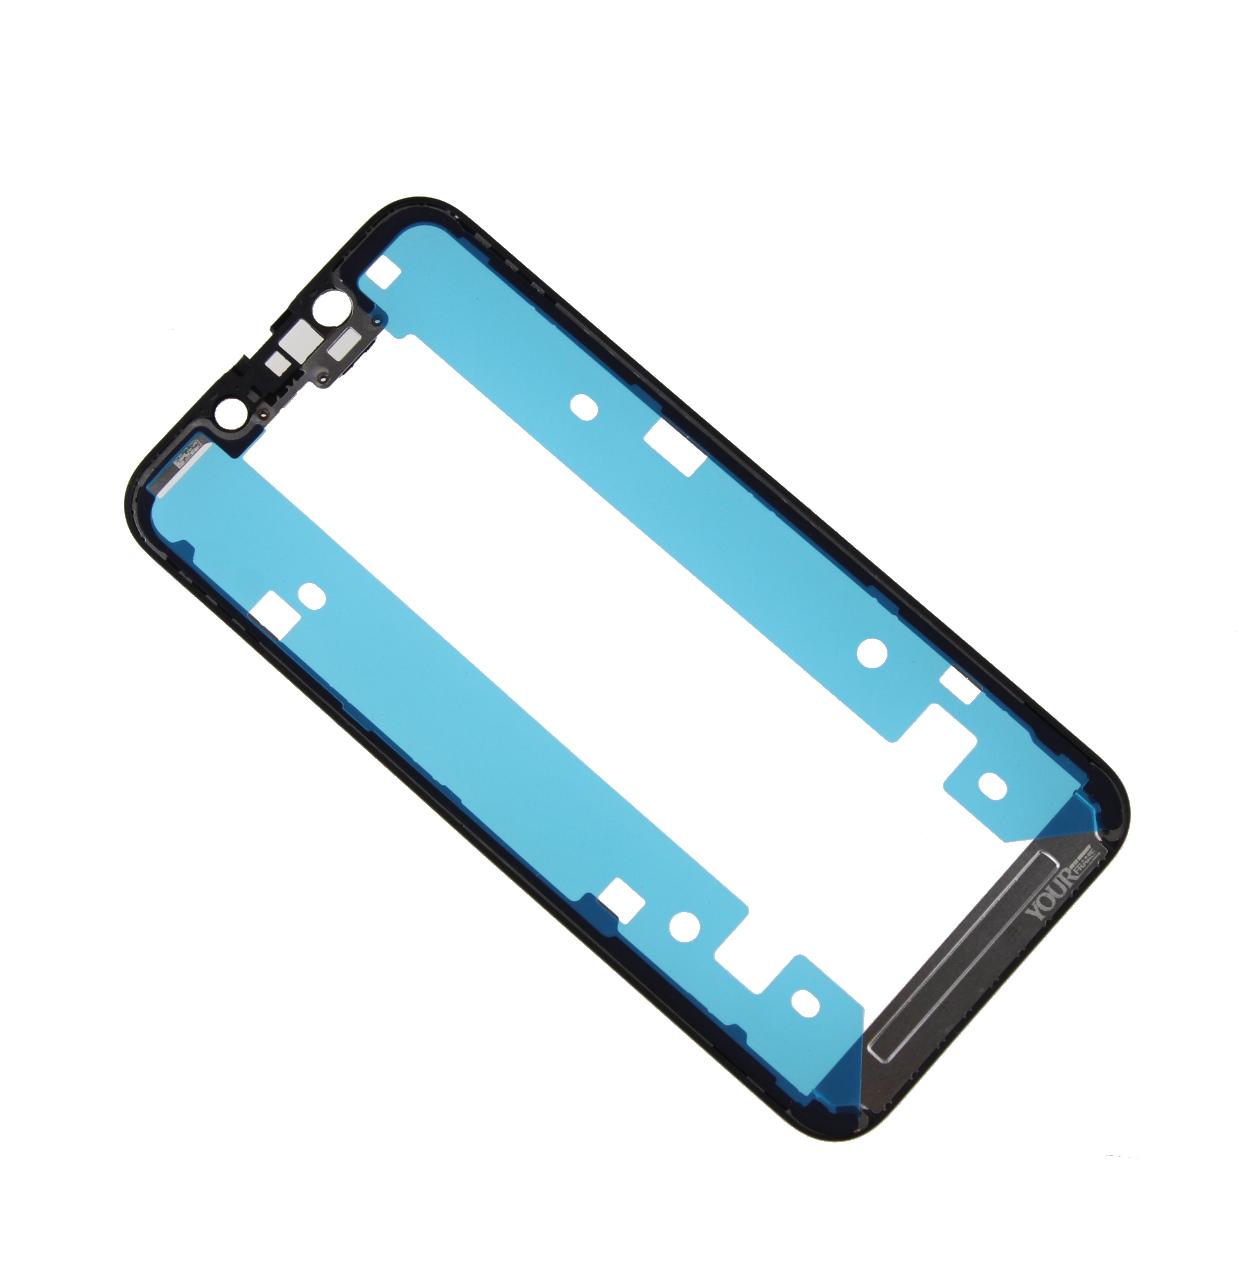 Ramka do wyświetlacza Musttby YOUR iPhone 13 mini + taśma montażowa